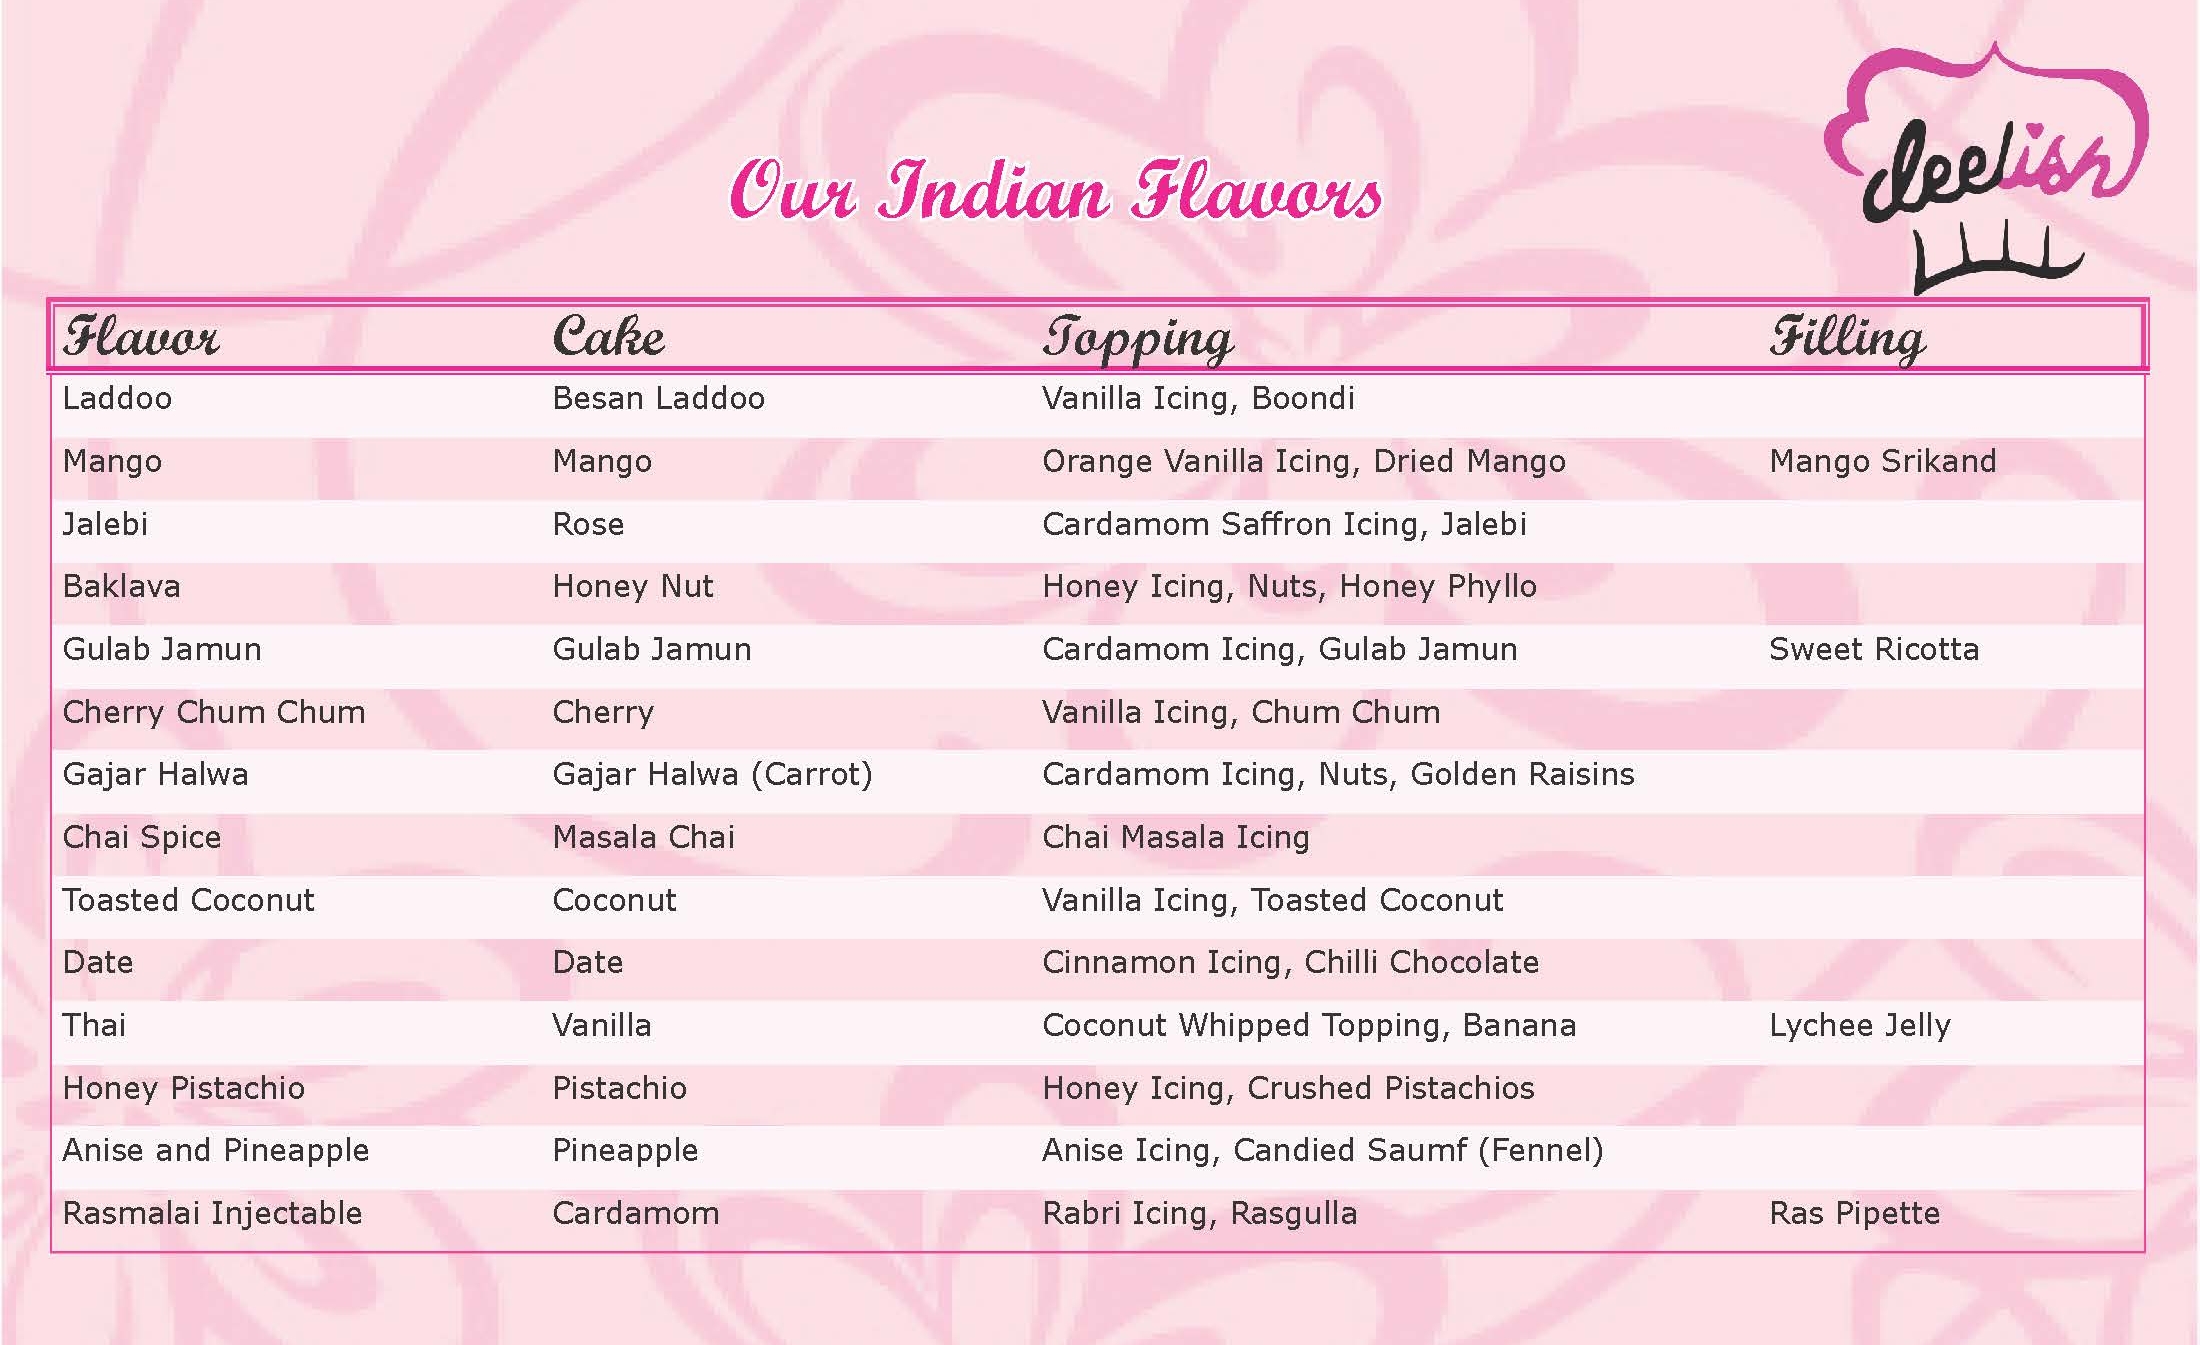 Deelish Indian Flavors